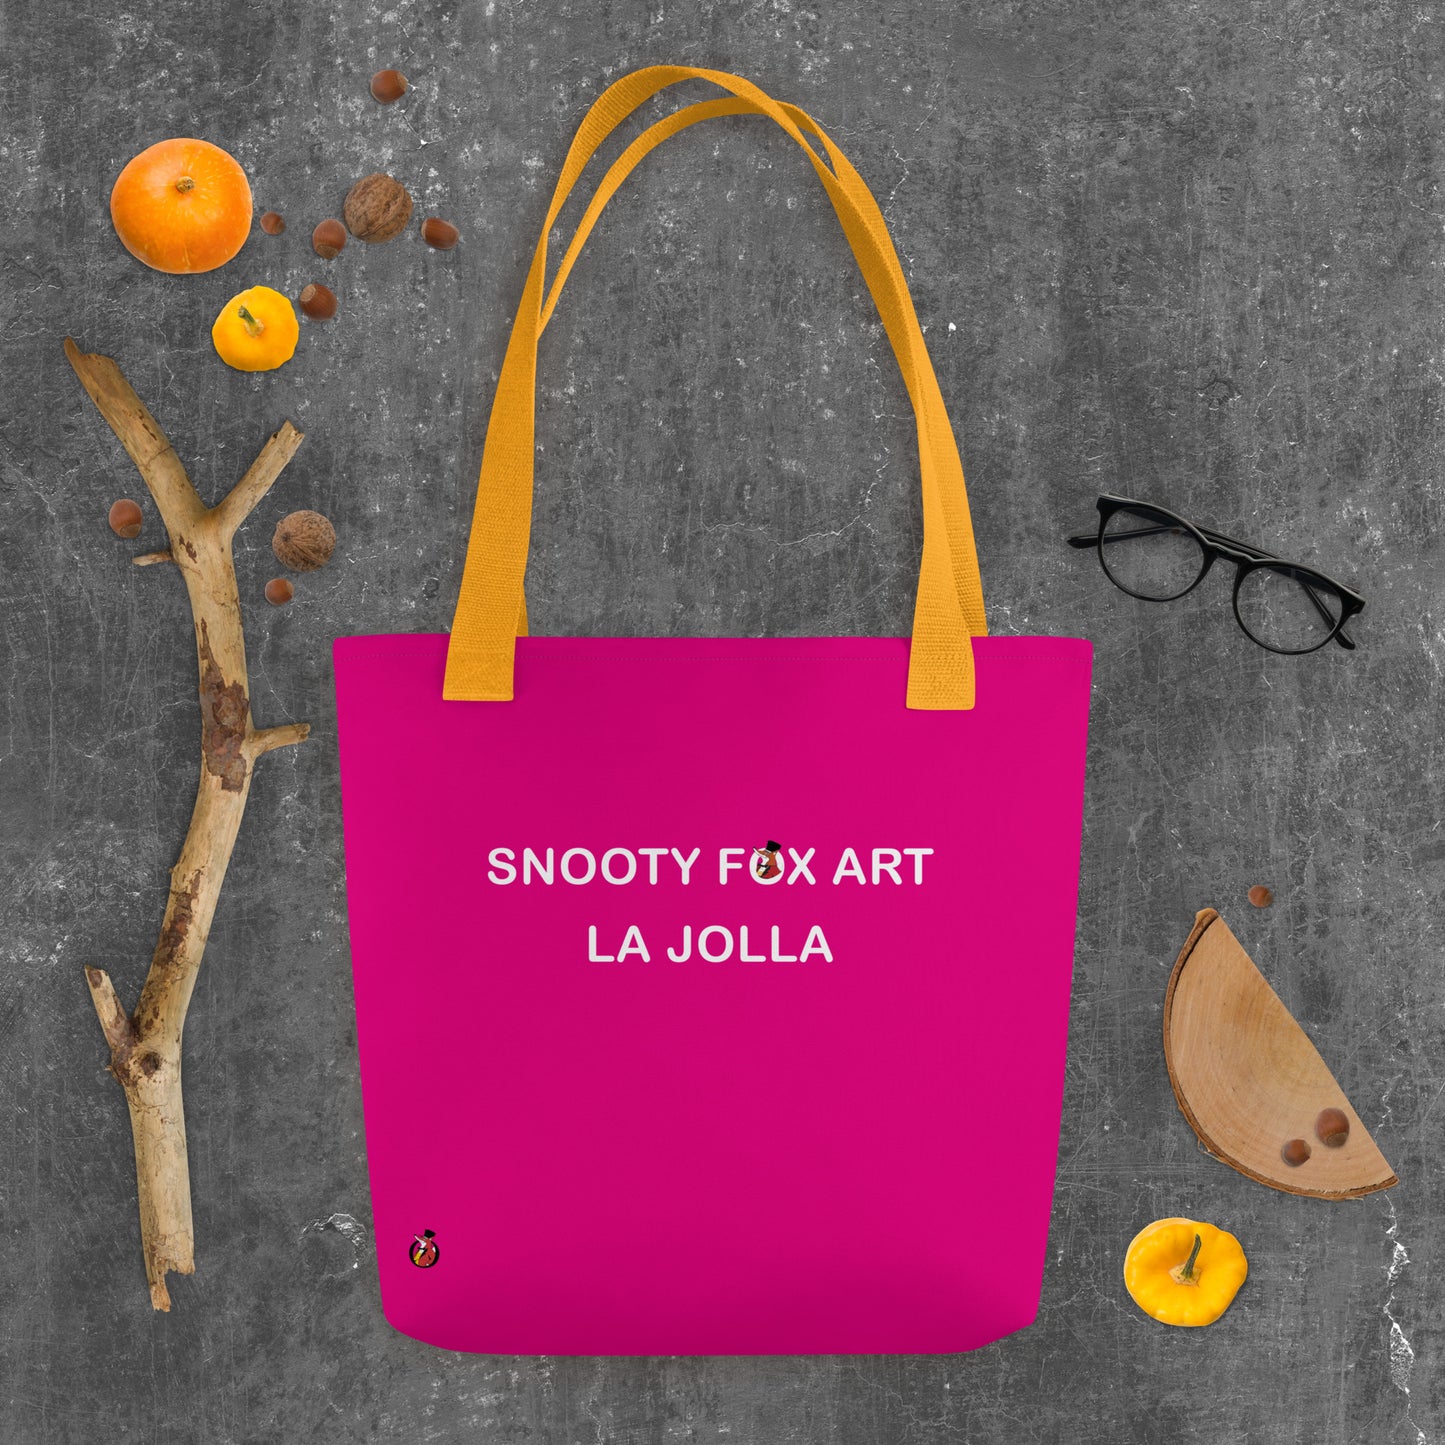 Snooty Fox Art Tote Bag - Snooty Fox Art Logo in Black